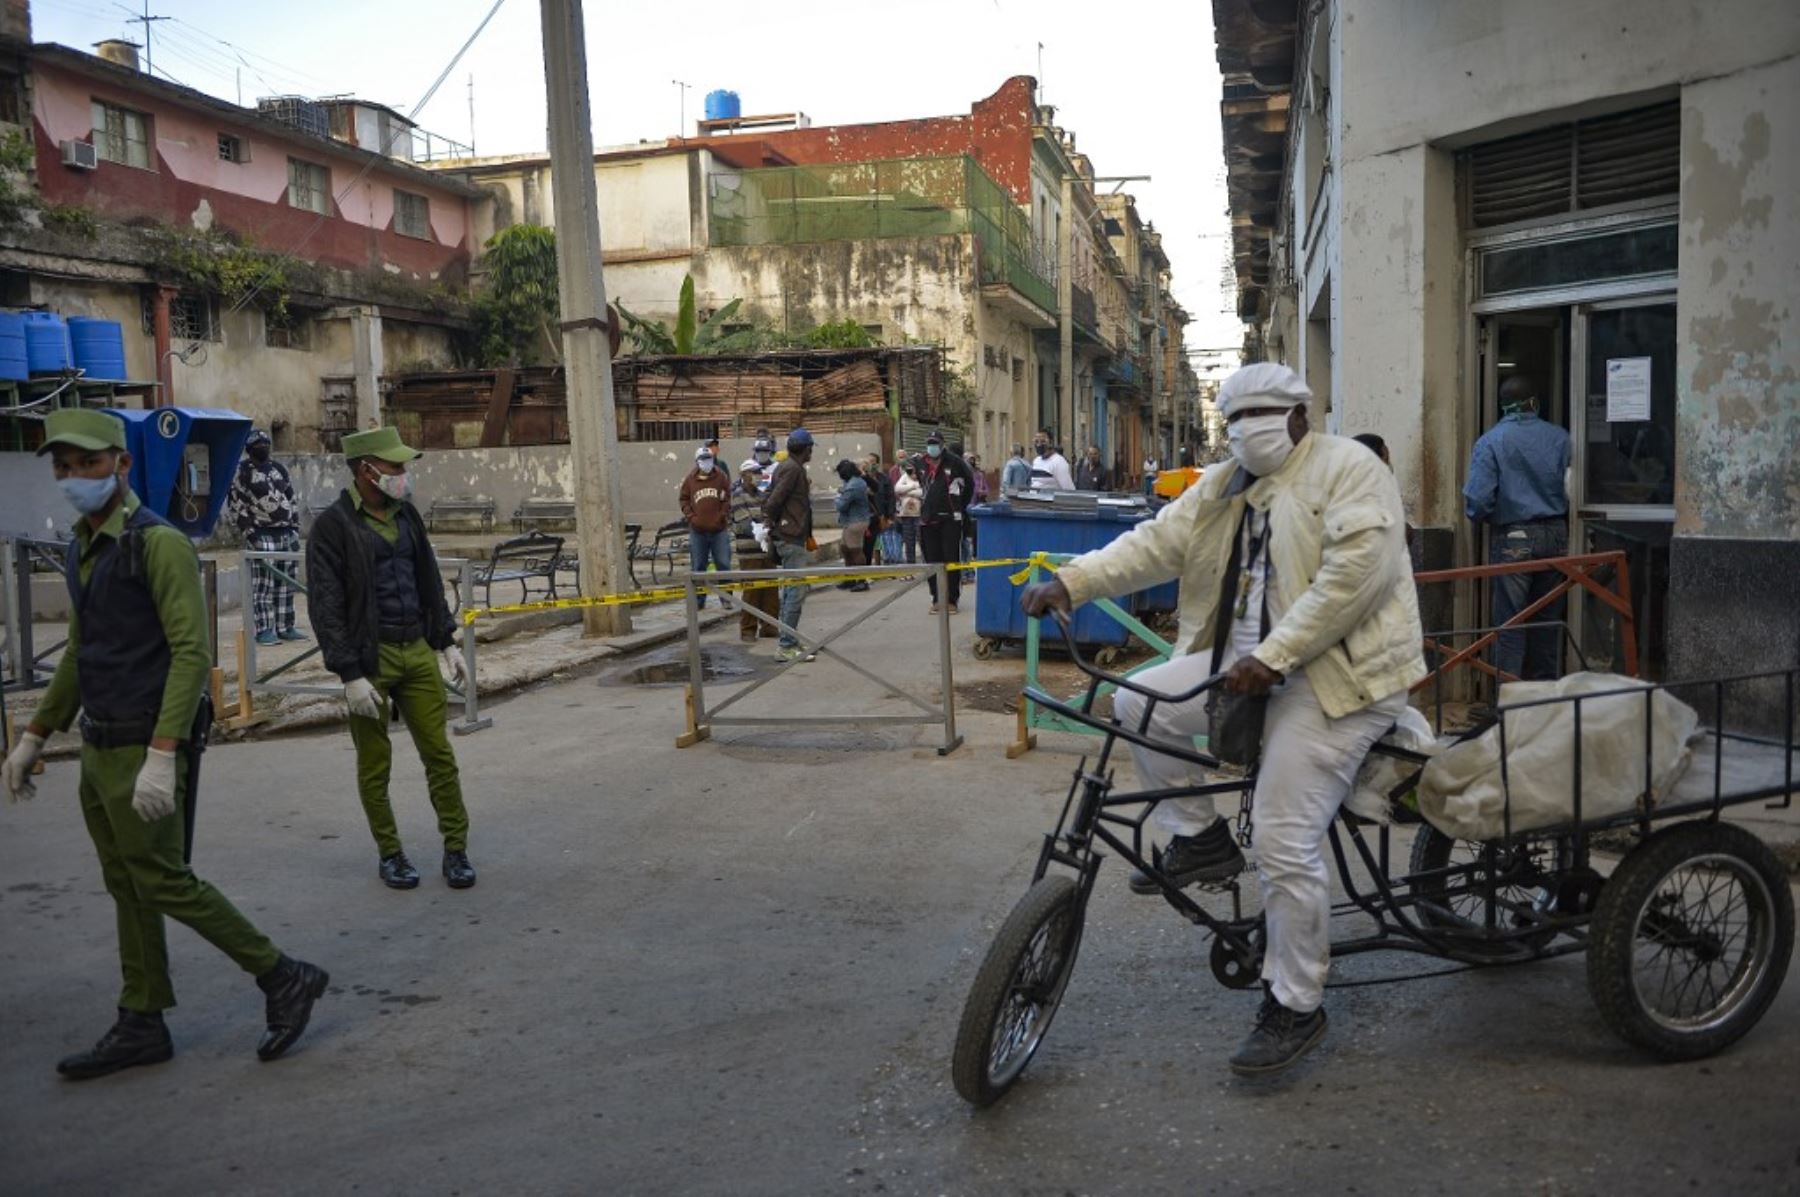 Policías custodian un zona acordonada por presentar casos de covid-19, en La Habana. Foto: AFP